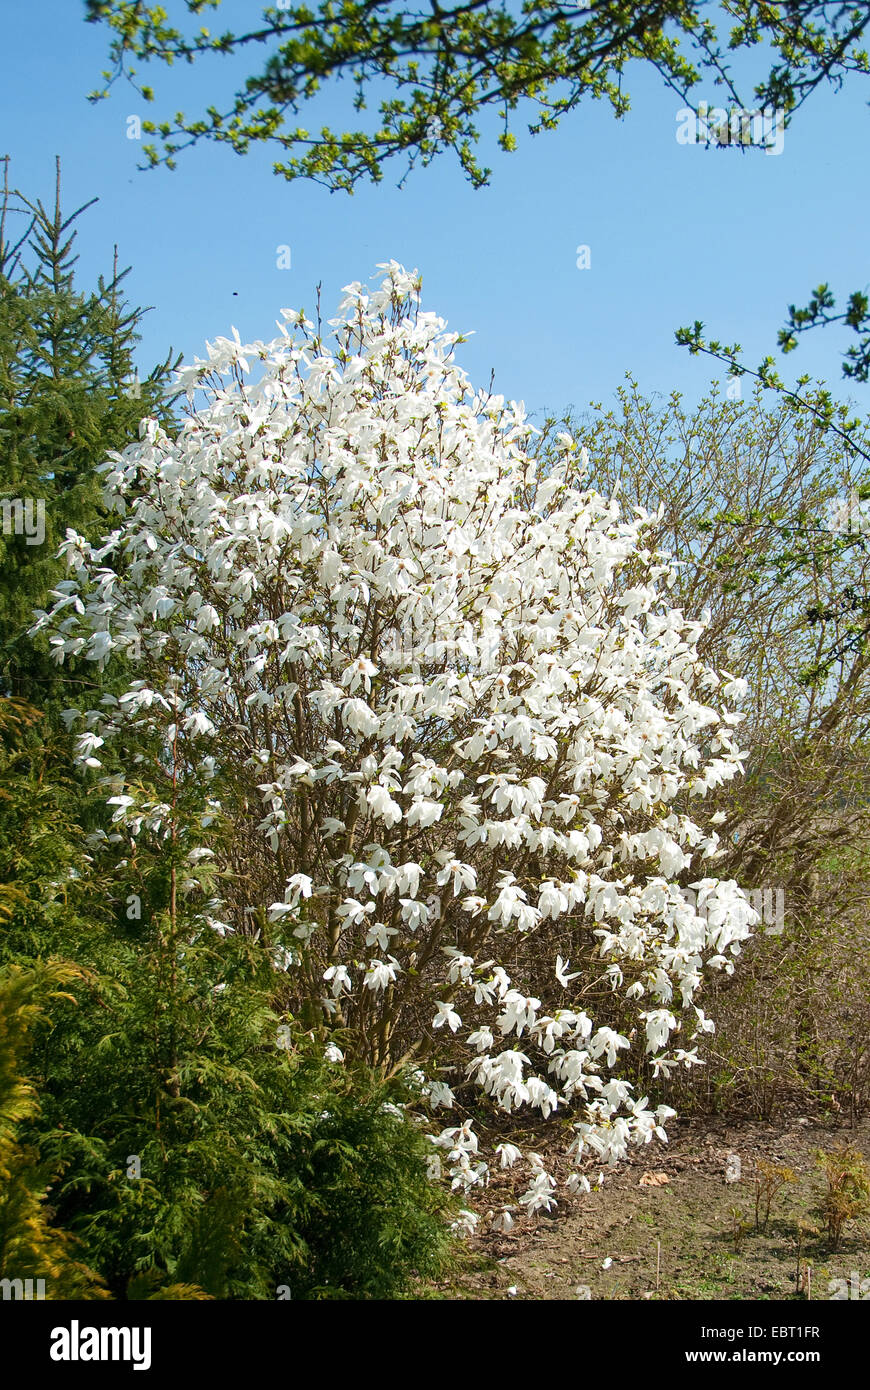 magnolia (Magnolia 'Wada's Memory', Magnolia Wada's Memory), cultivar Wada's Memory, blooming Stock Photo